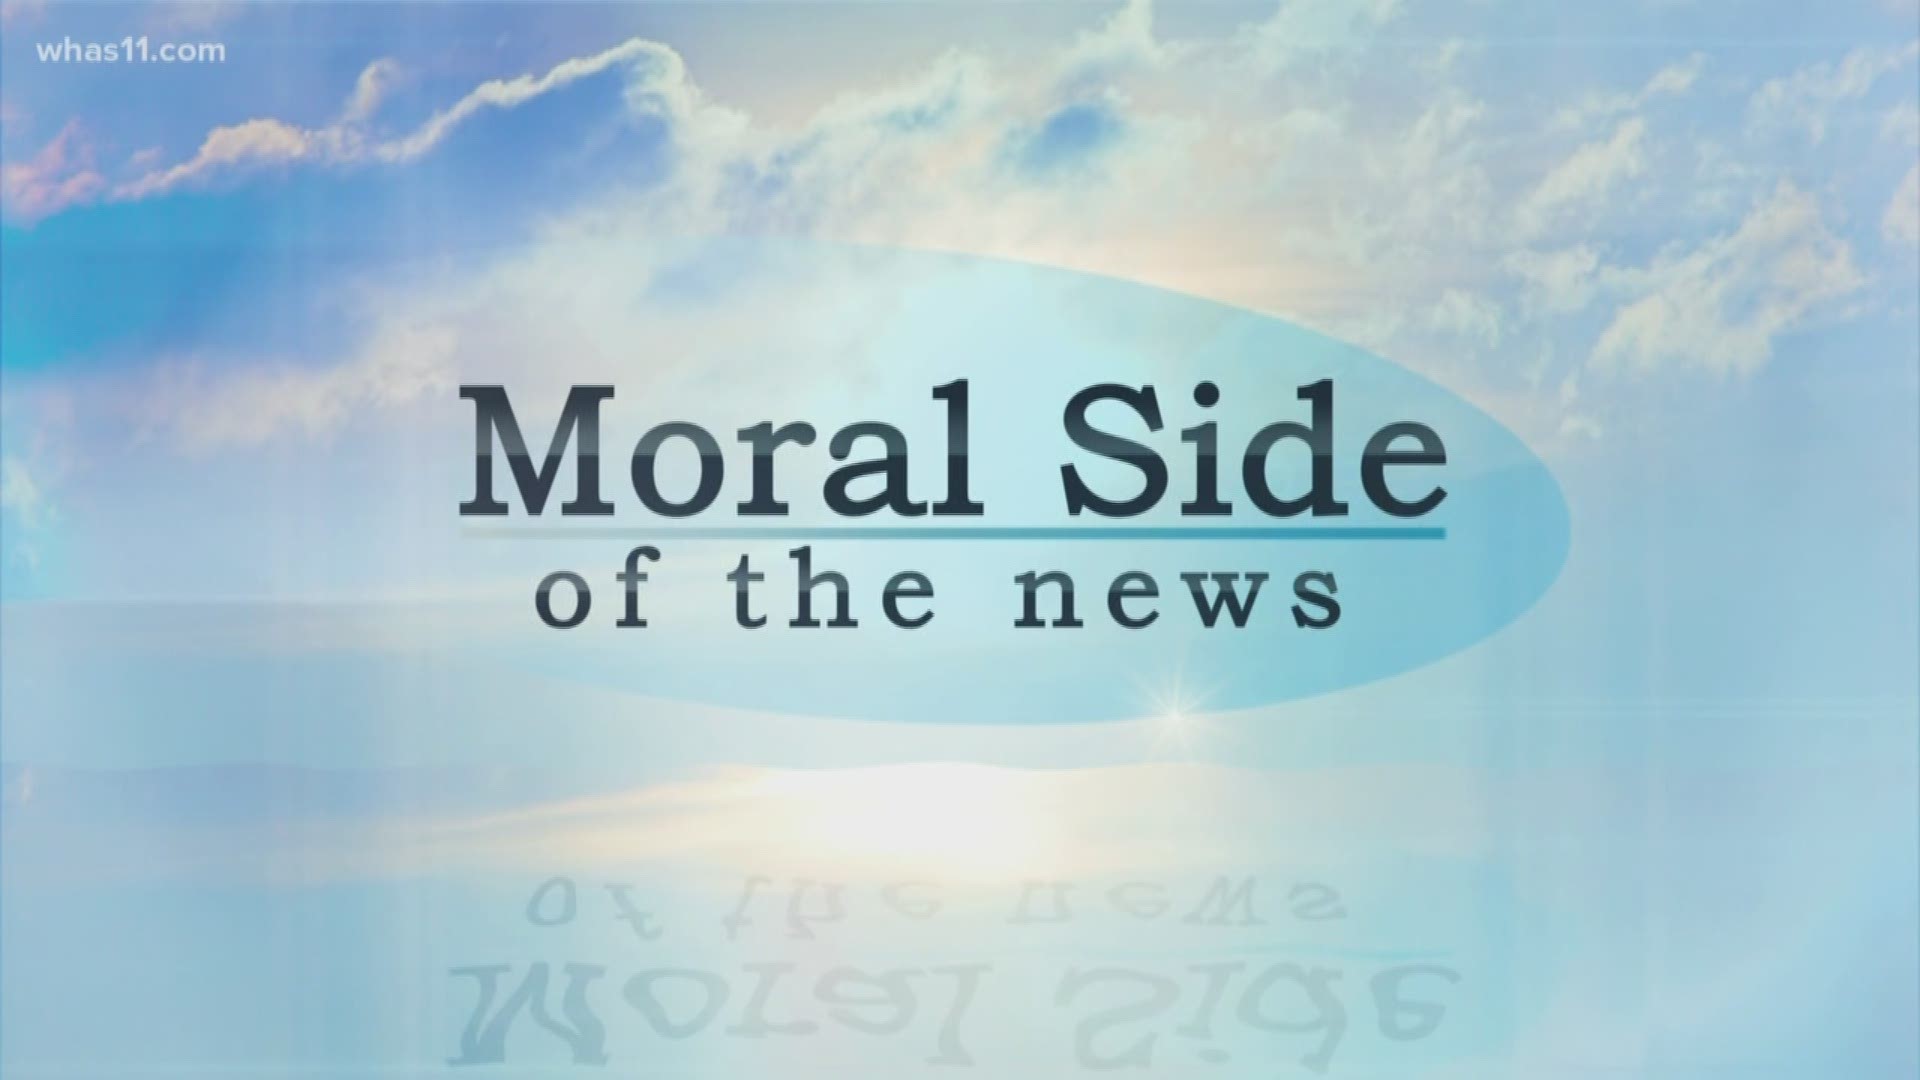 Moral Side: October 22, 2017